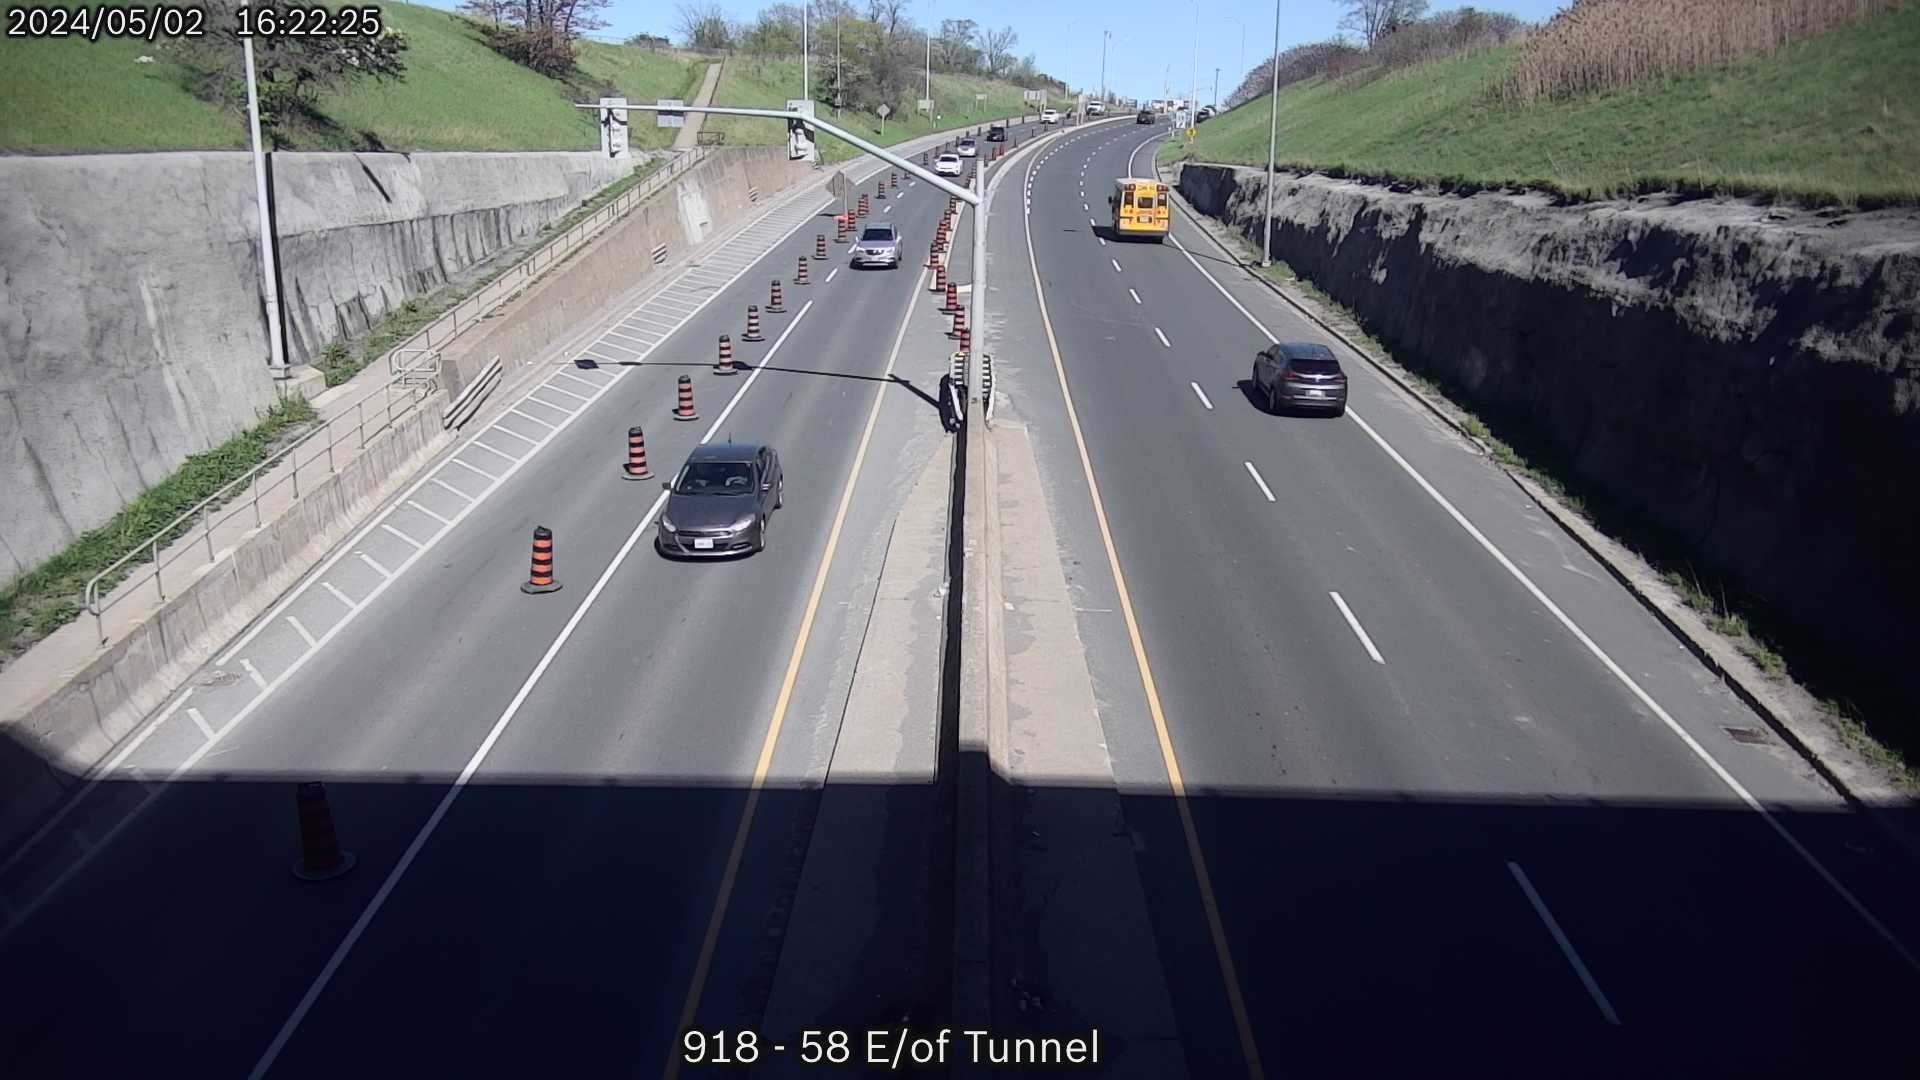 Niagara WB Thorold Tunnel Live Traffic Cameras